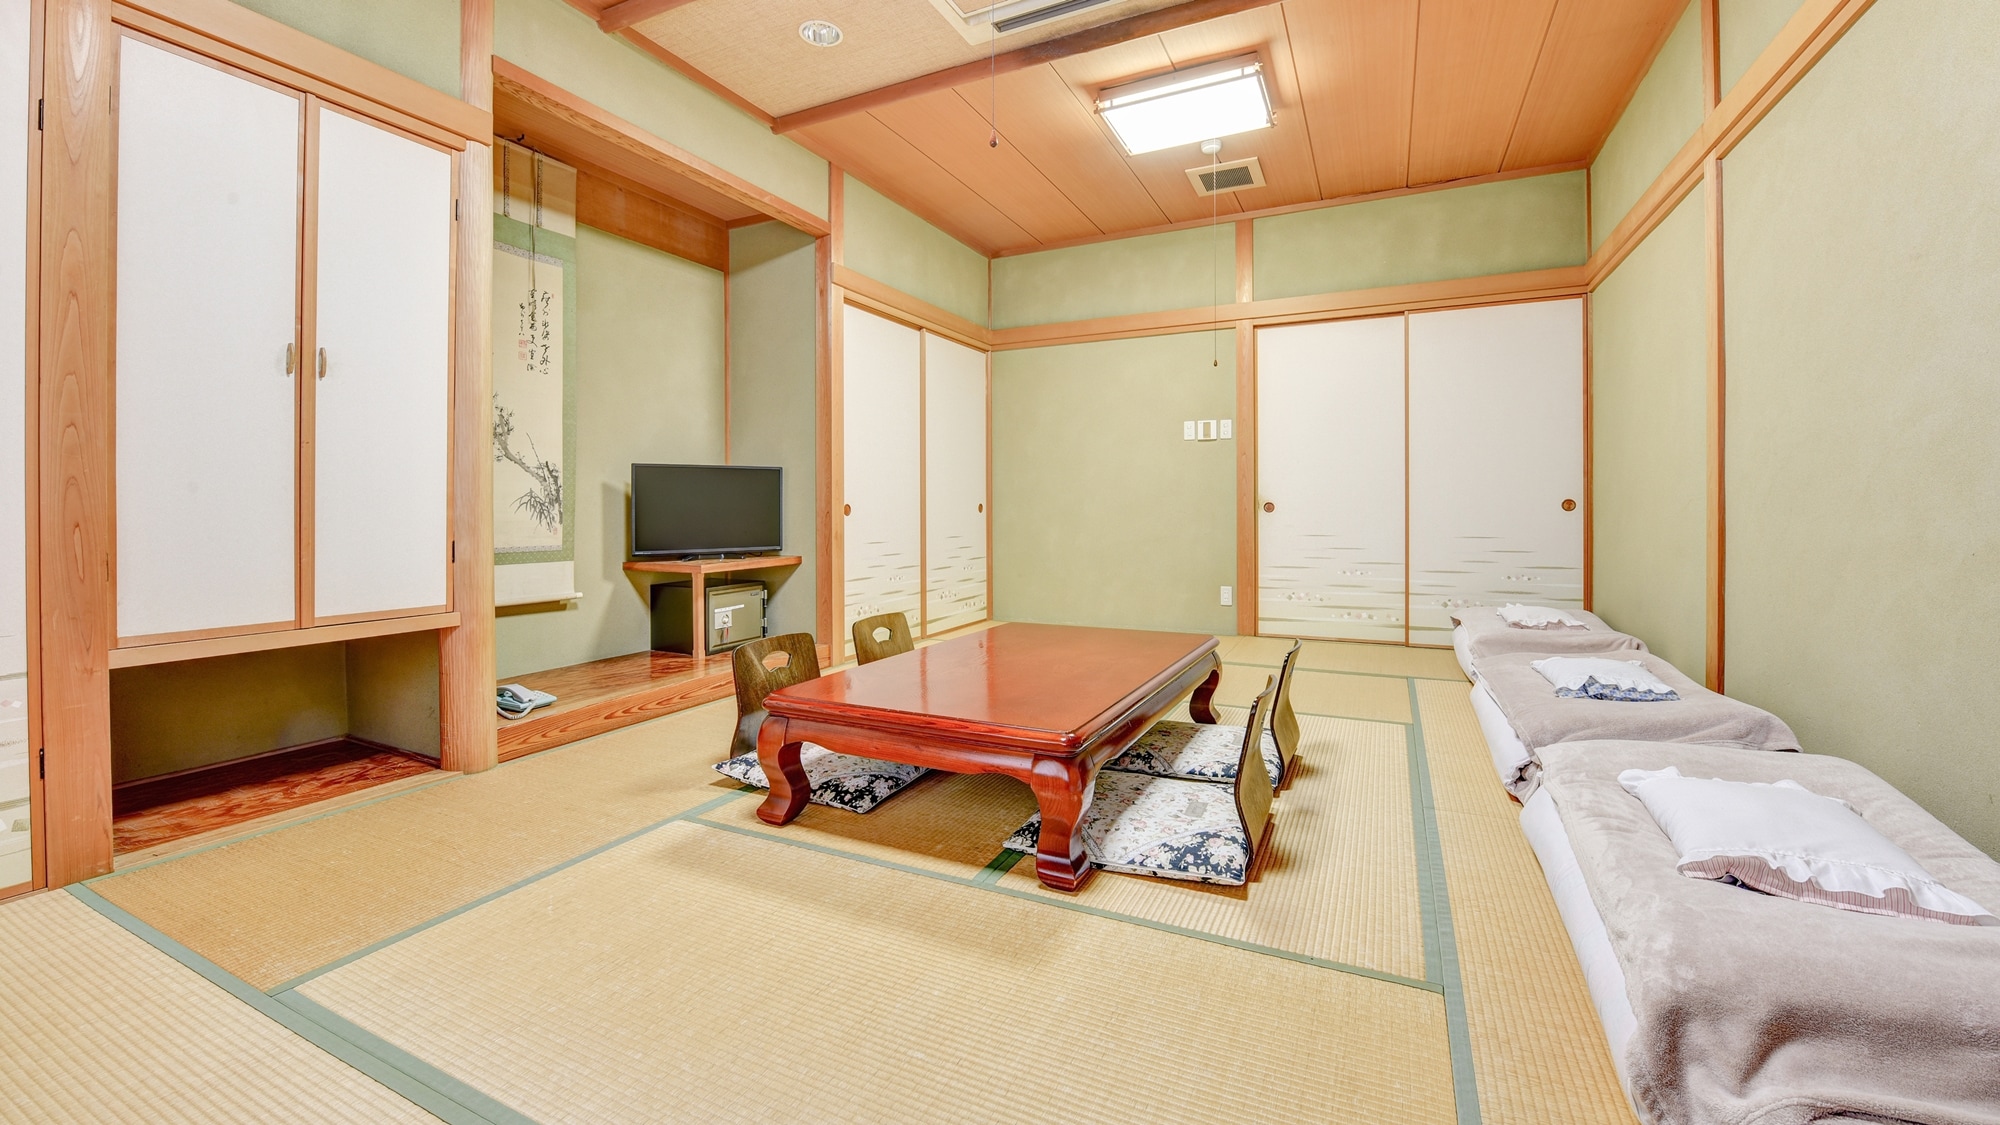 * ห้องสไตล์ญี่ปุ่น 12 เสื่อทาทามิ / ห้องพักสไตล์ญี่ปุ่นล้วนมีบรรยากาศที่หรูหราและเงียบสงบ โปรดใช้เวลาพักผ่อนกับครอบครัวหรือกลุ่ม